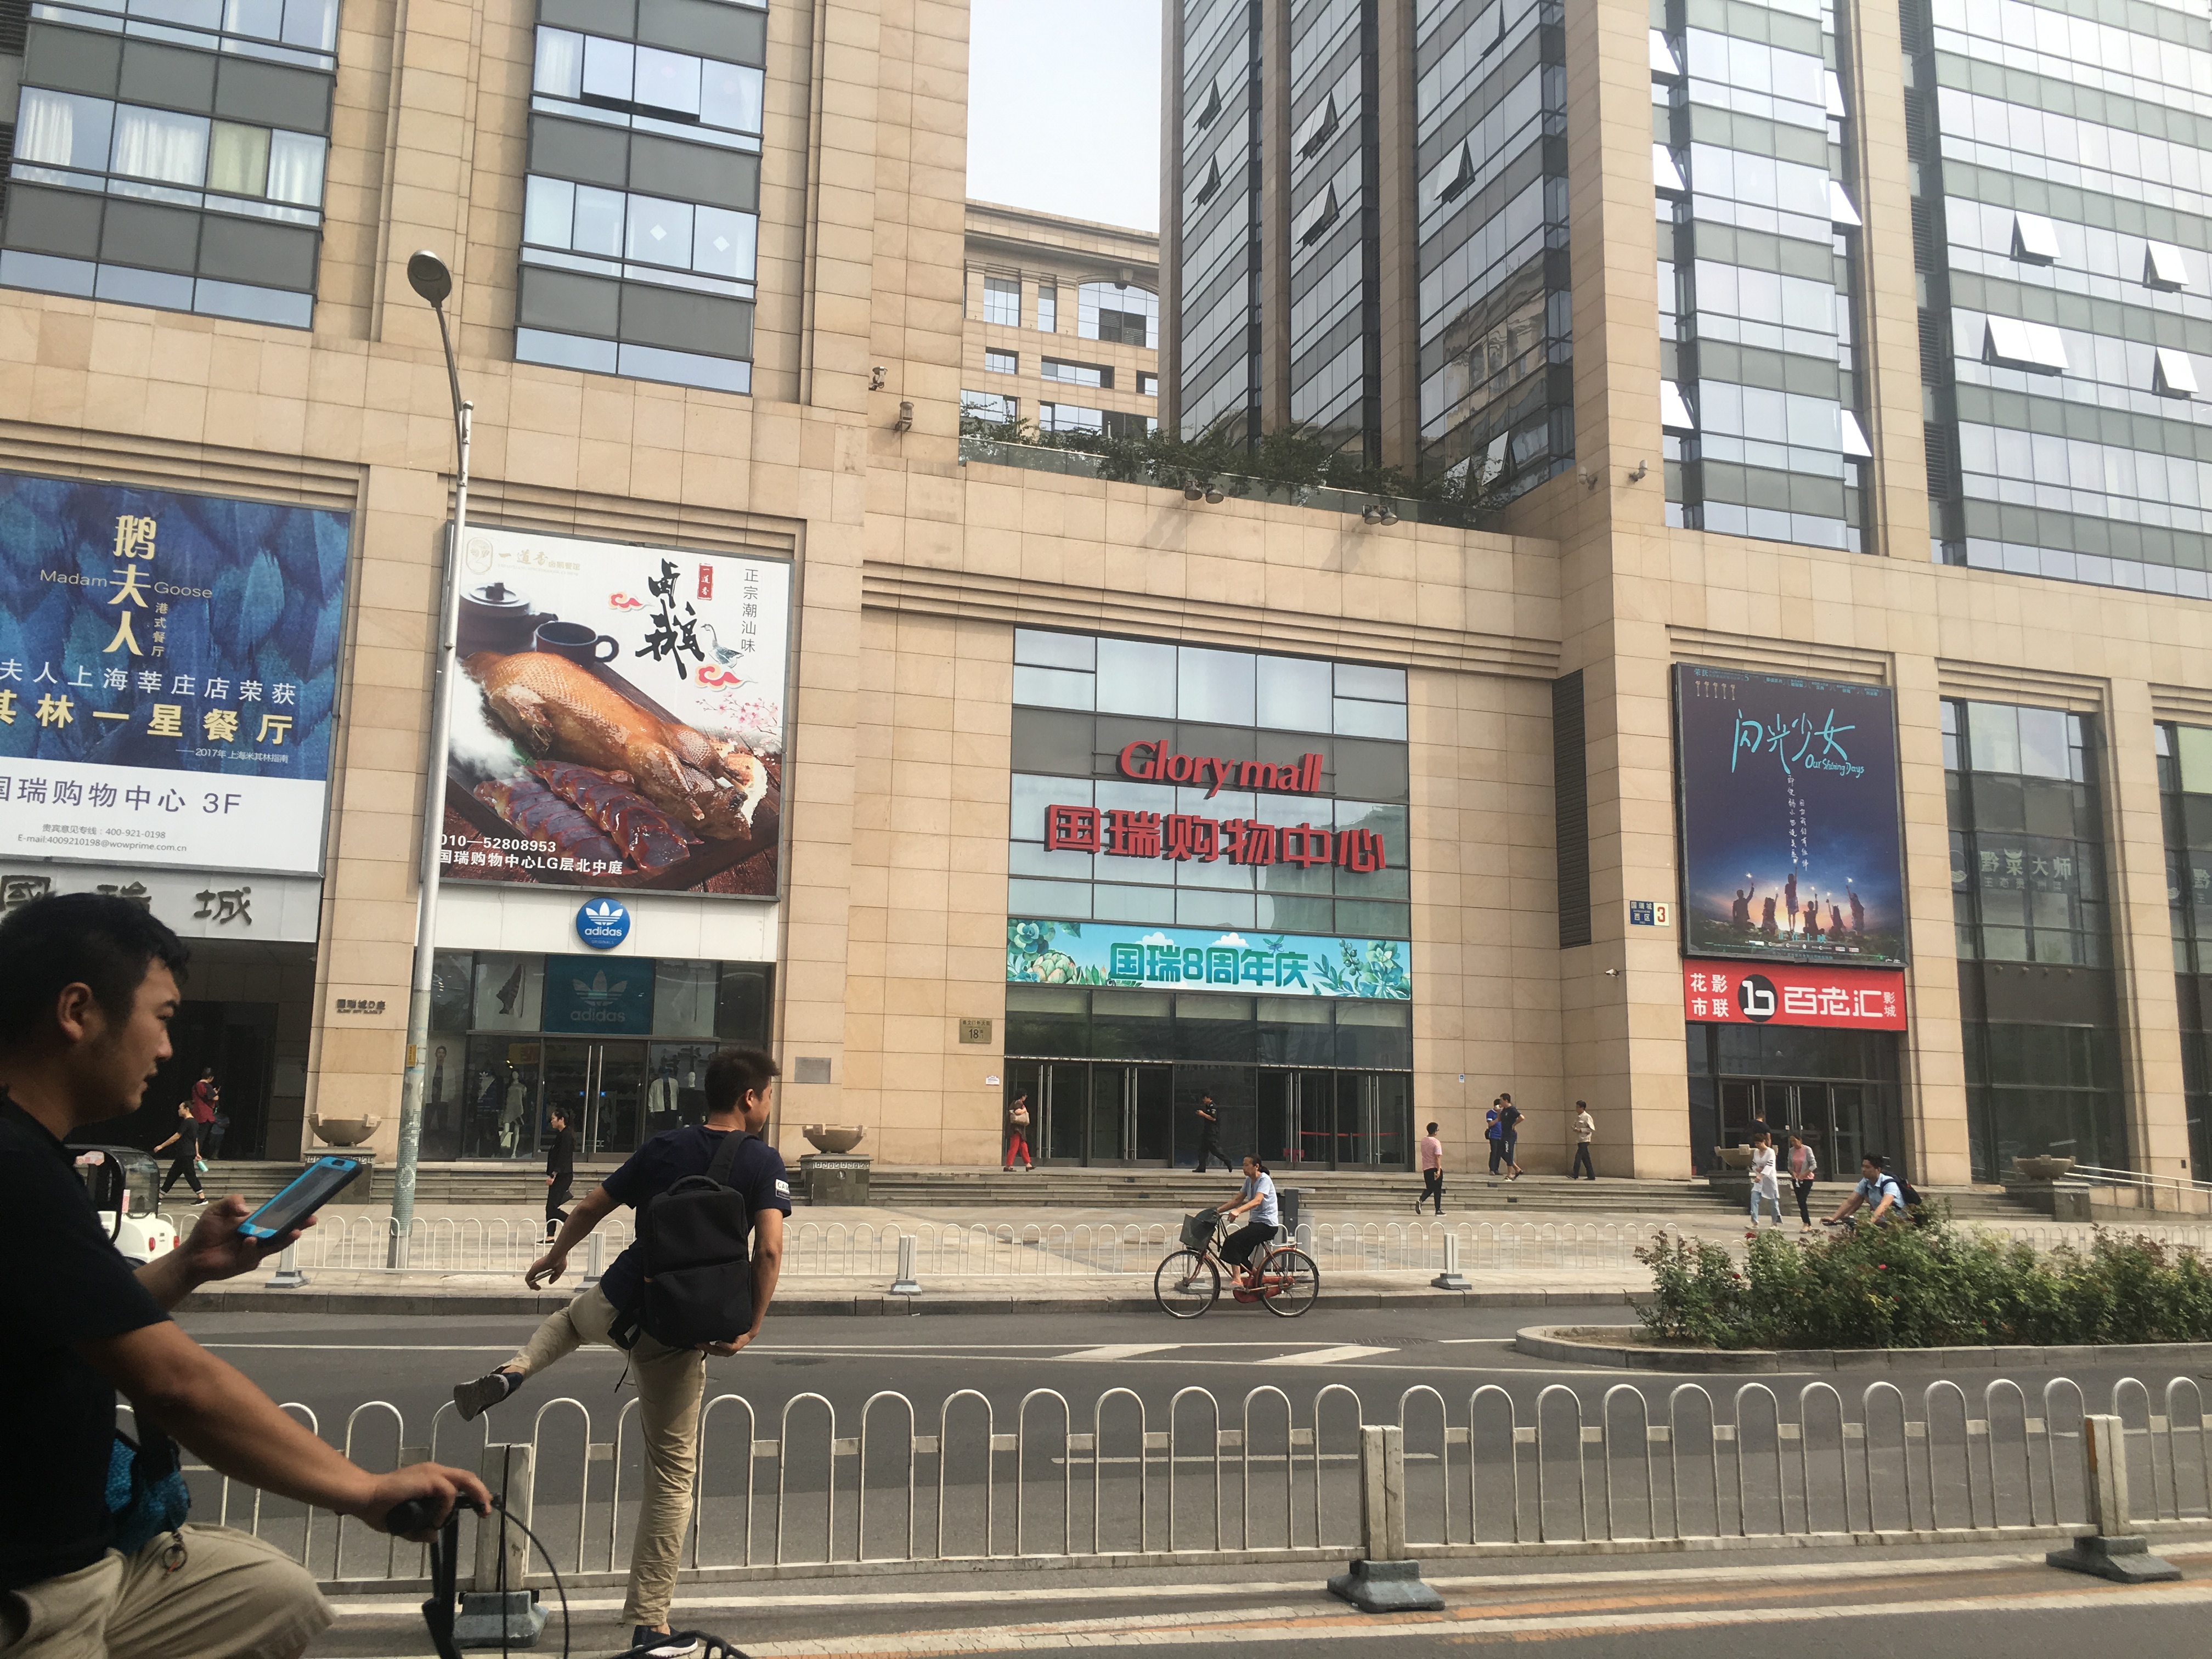 【E星体育·广播系统案例】北京国瑞地下停车场